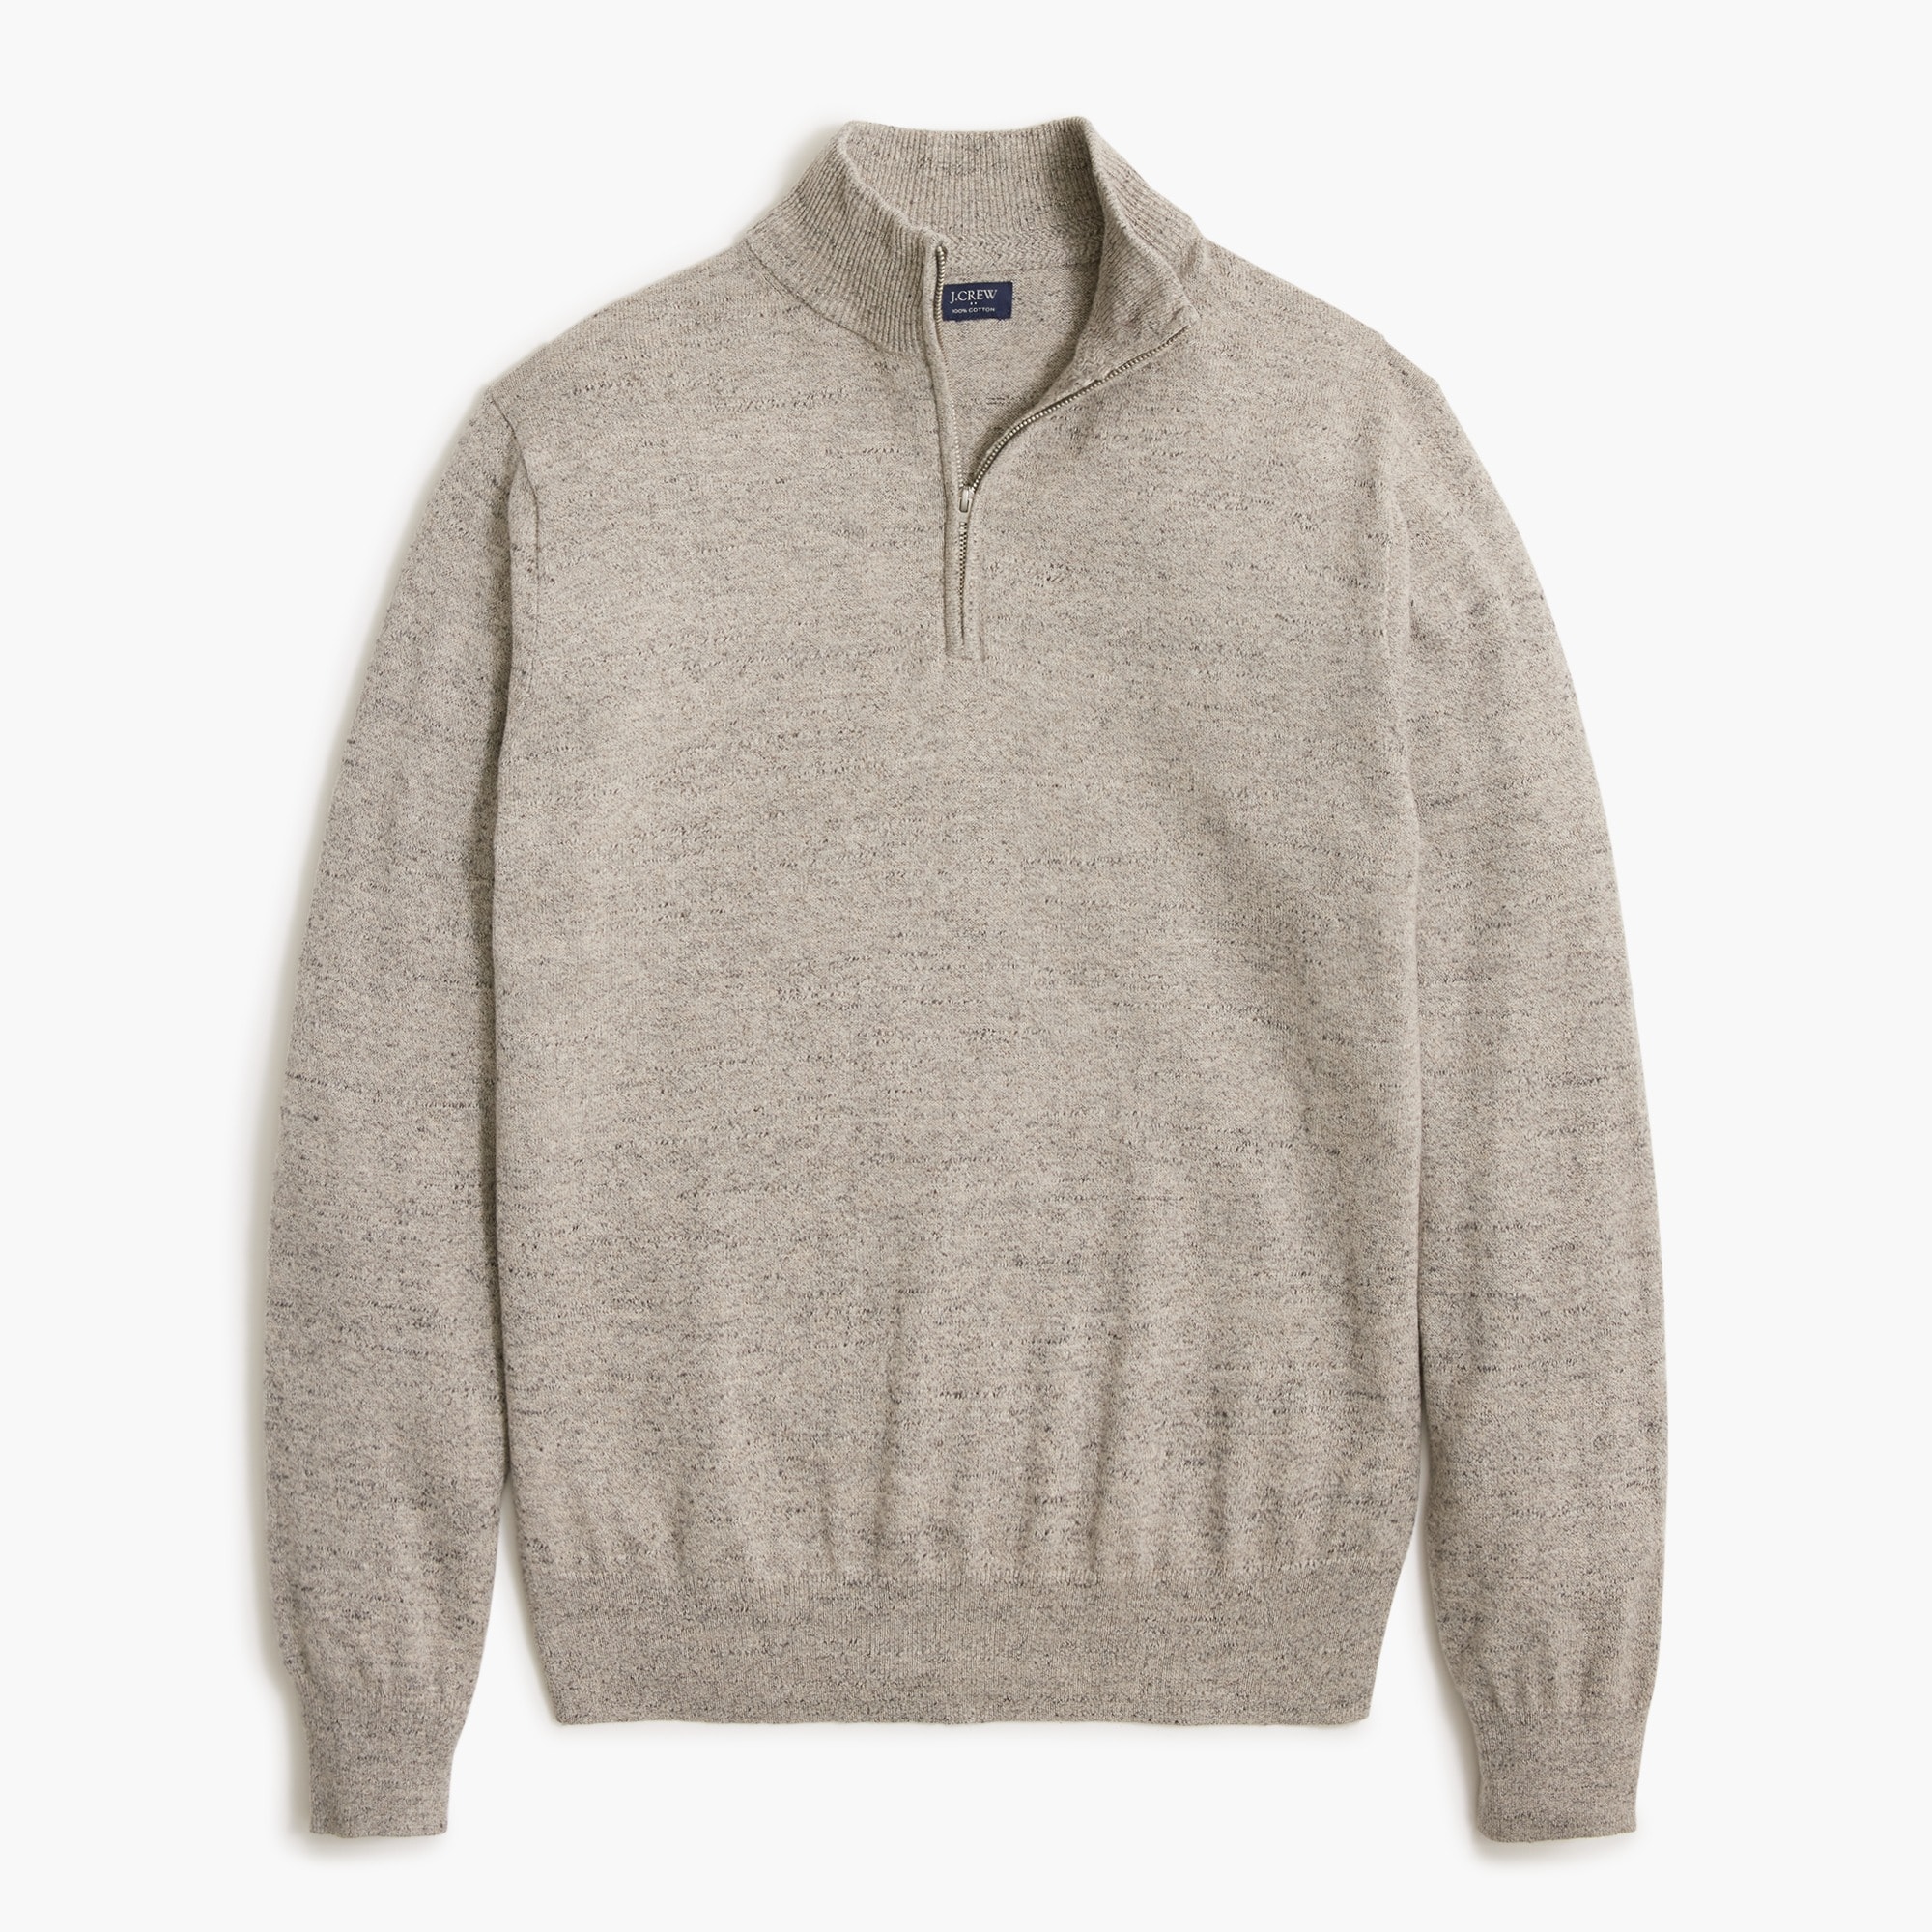 Raglan half-zip sweater